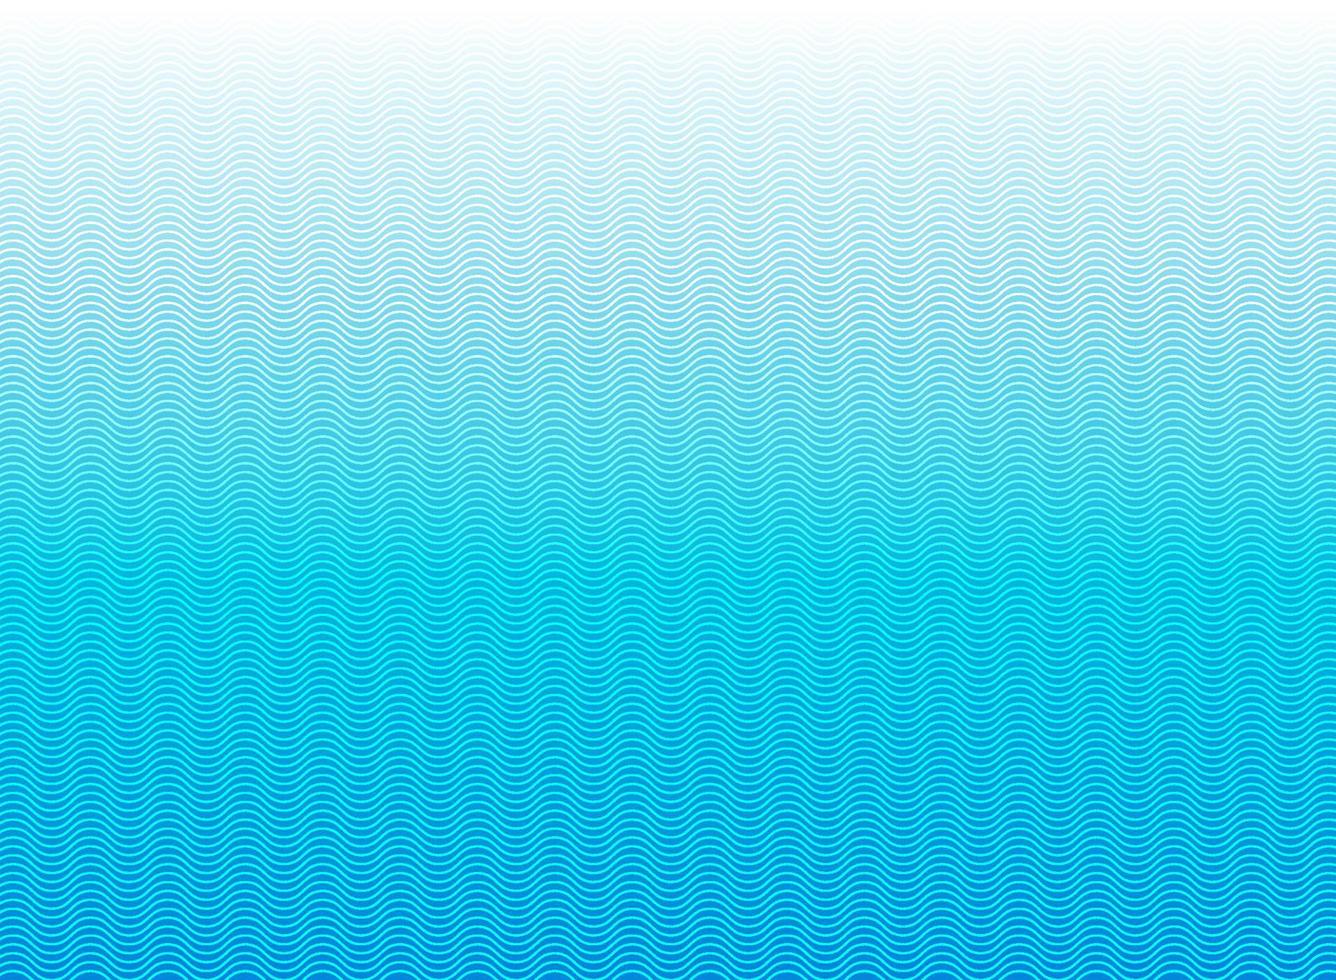 Onda de líneas azules abstractas, patrón de rayas onduladas, superficie rugosa vector